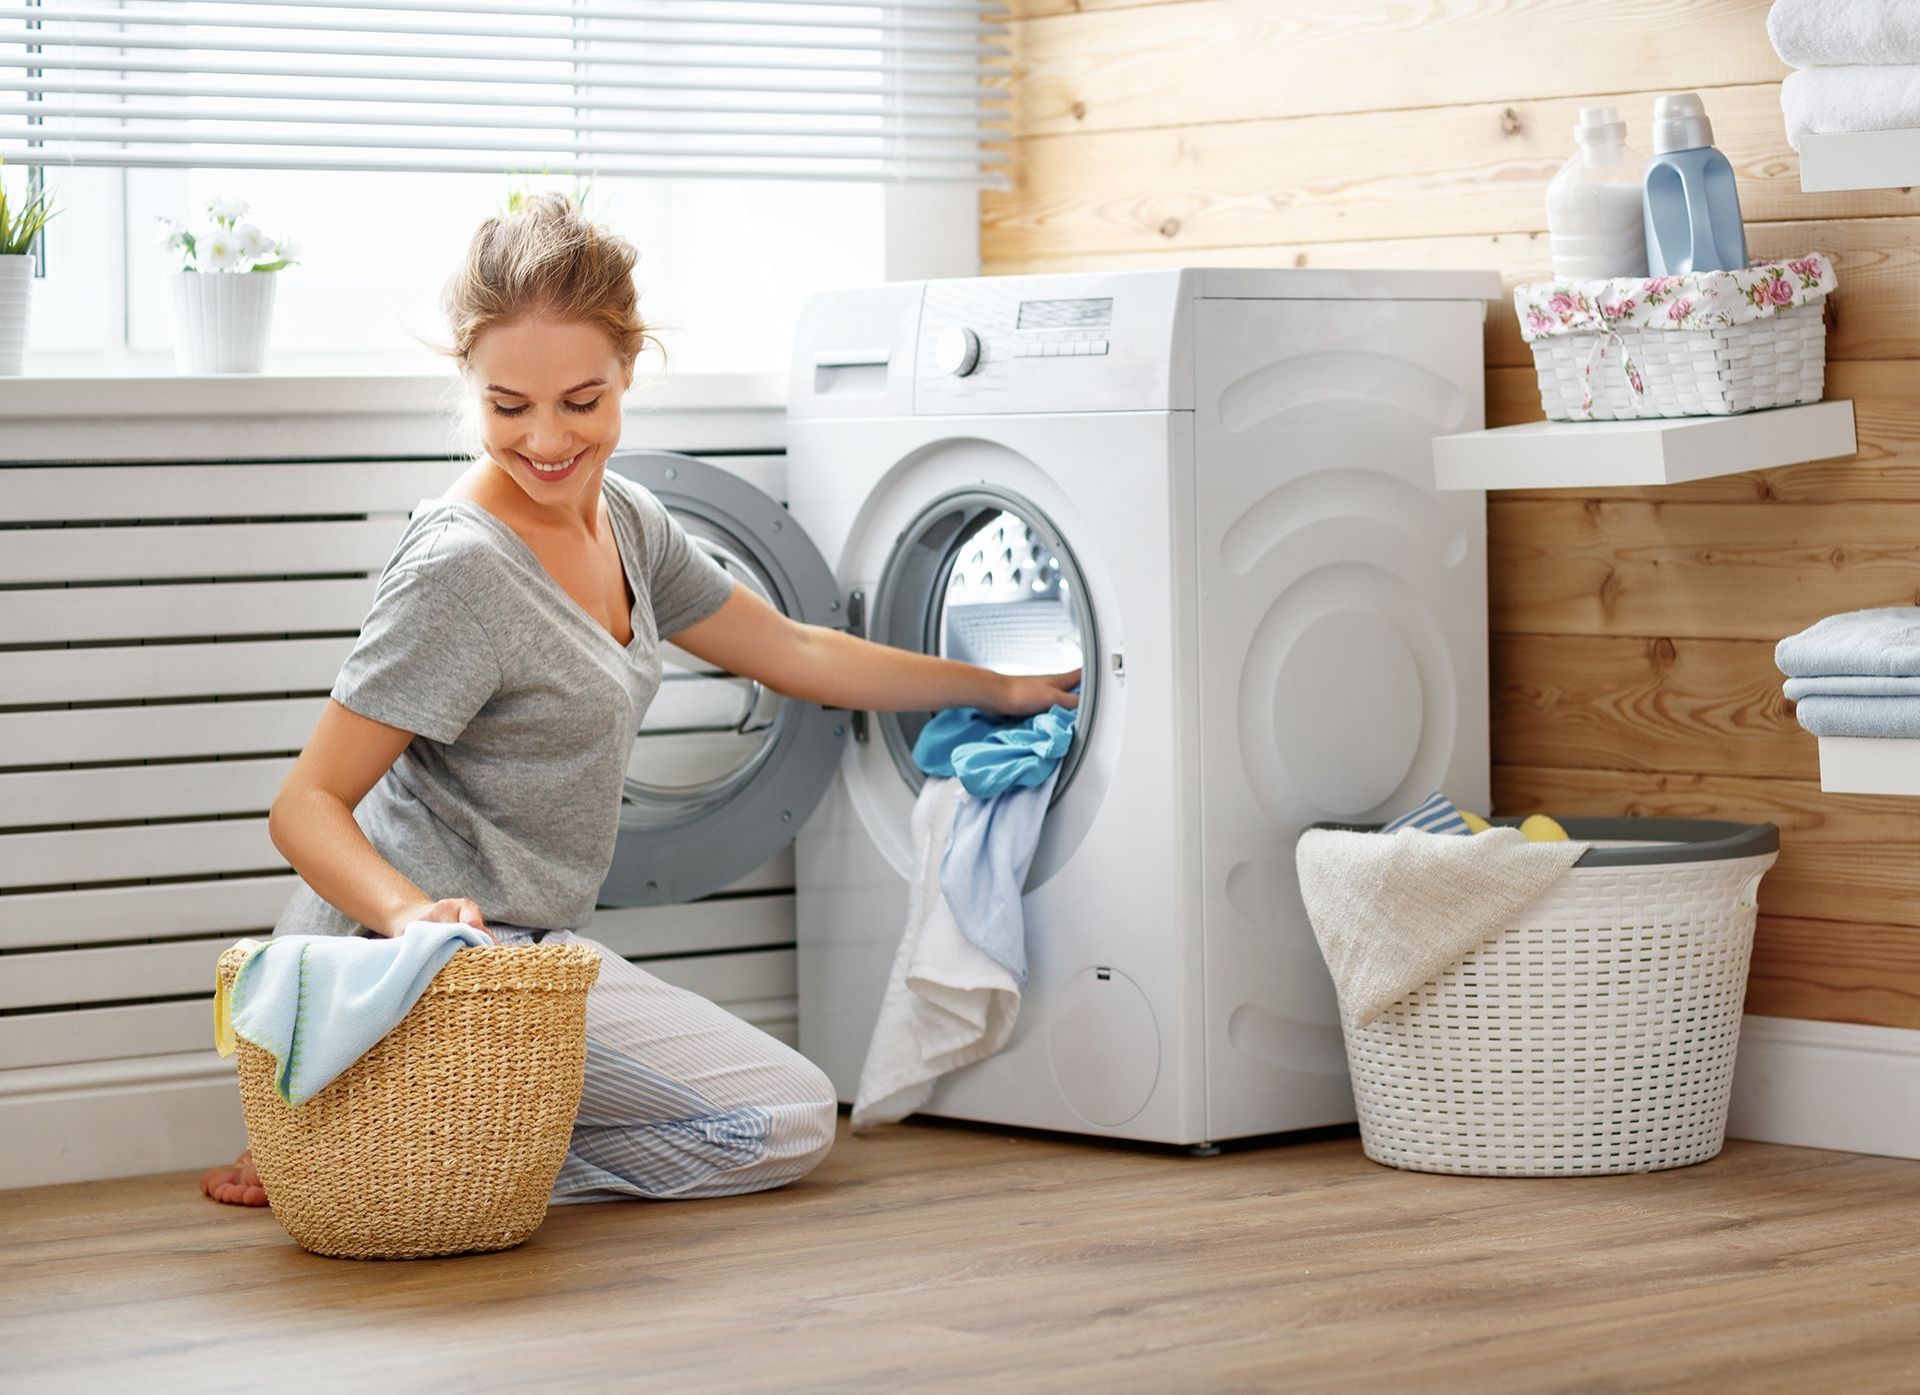 Fröhliche Hausfrau räumt Waschmaschine ein